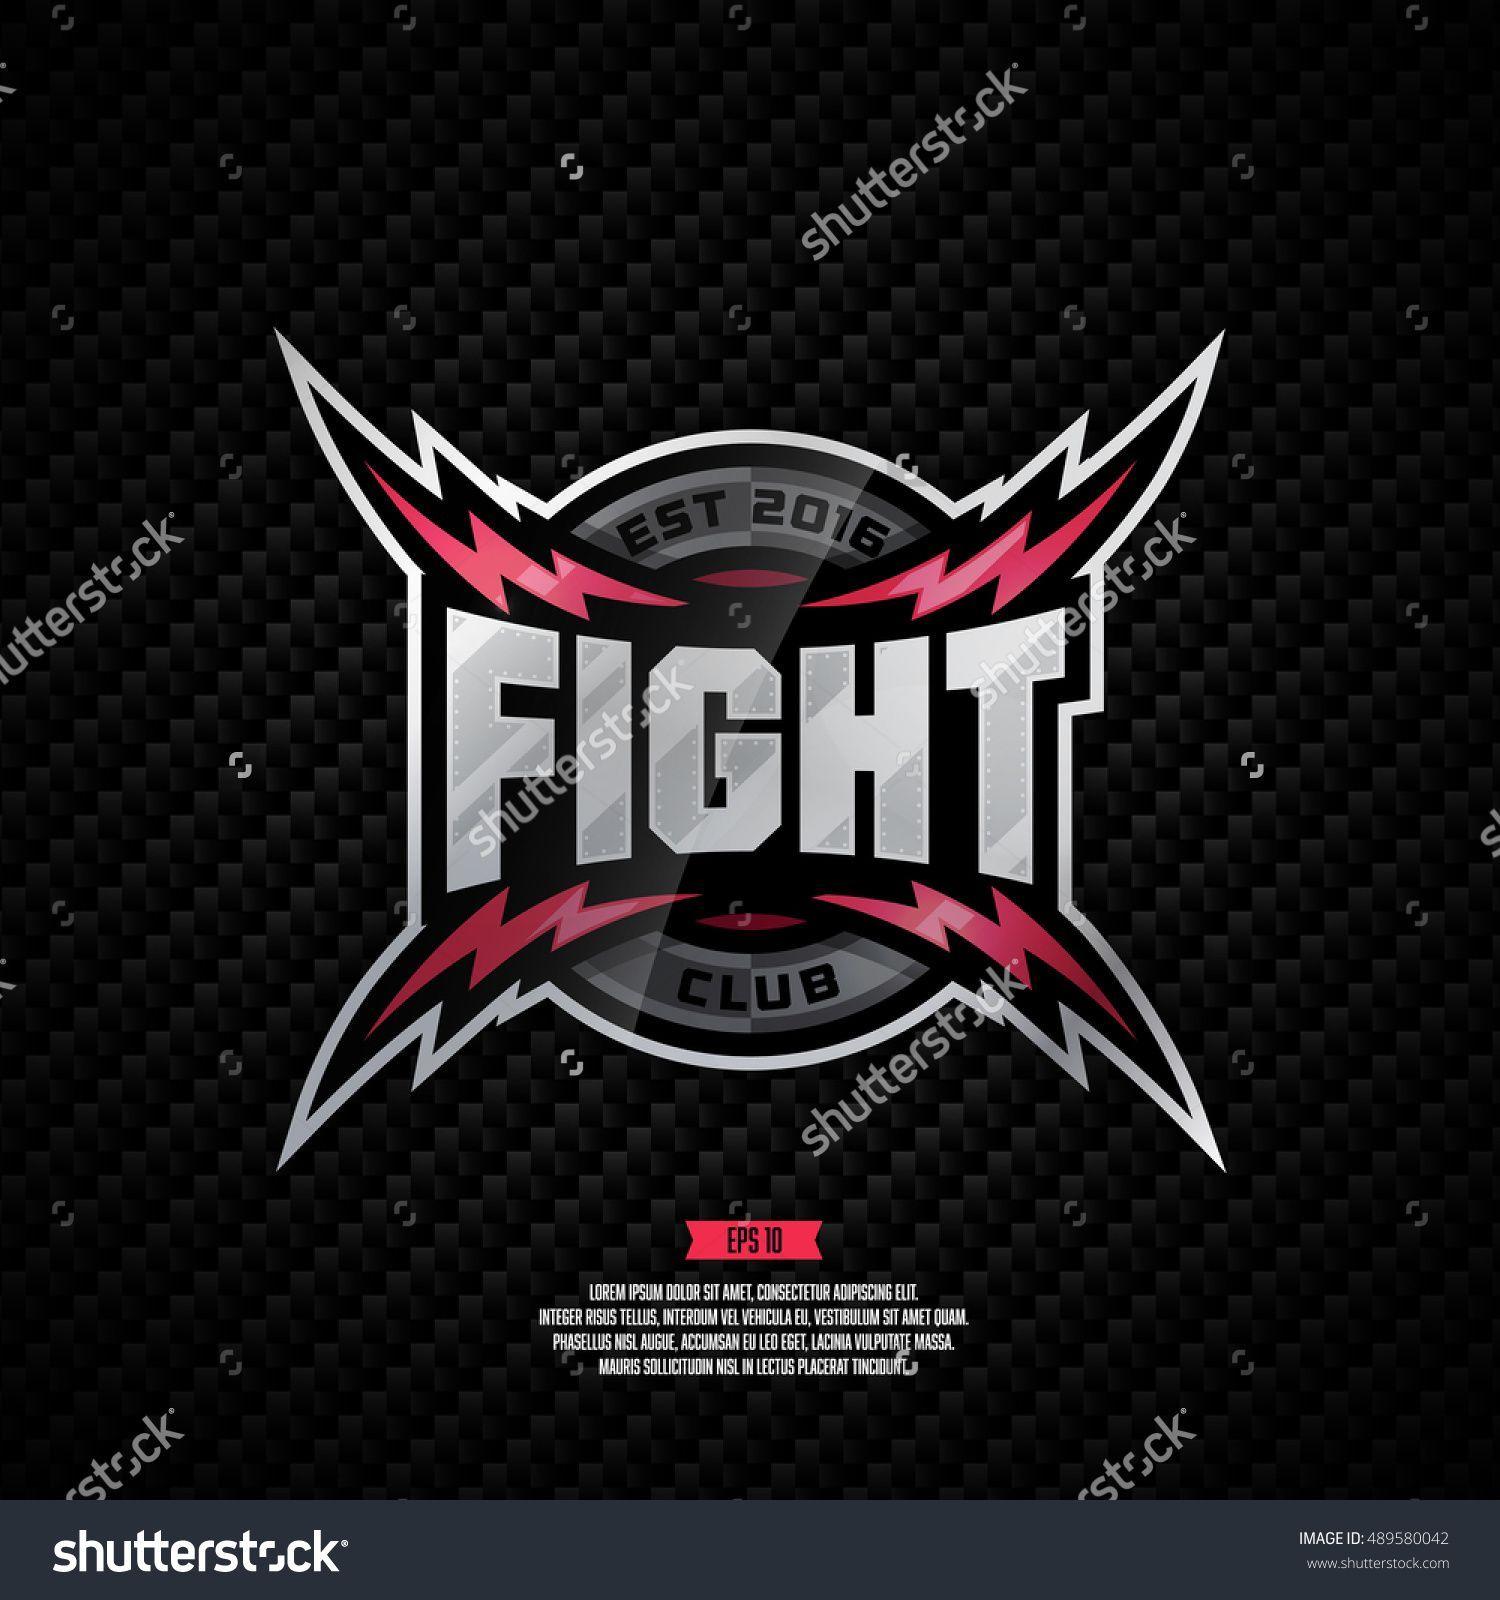 Modern Team Logo - Modern professional fight club logo design. LOGO